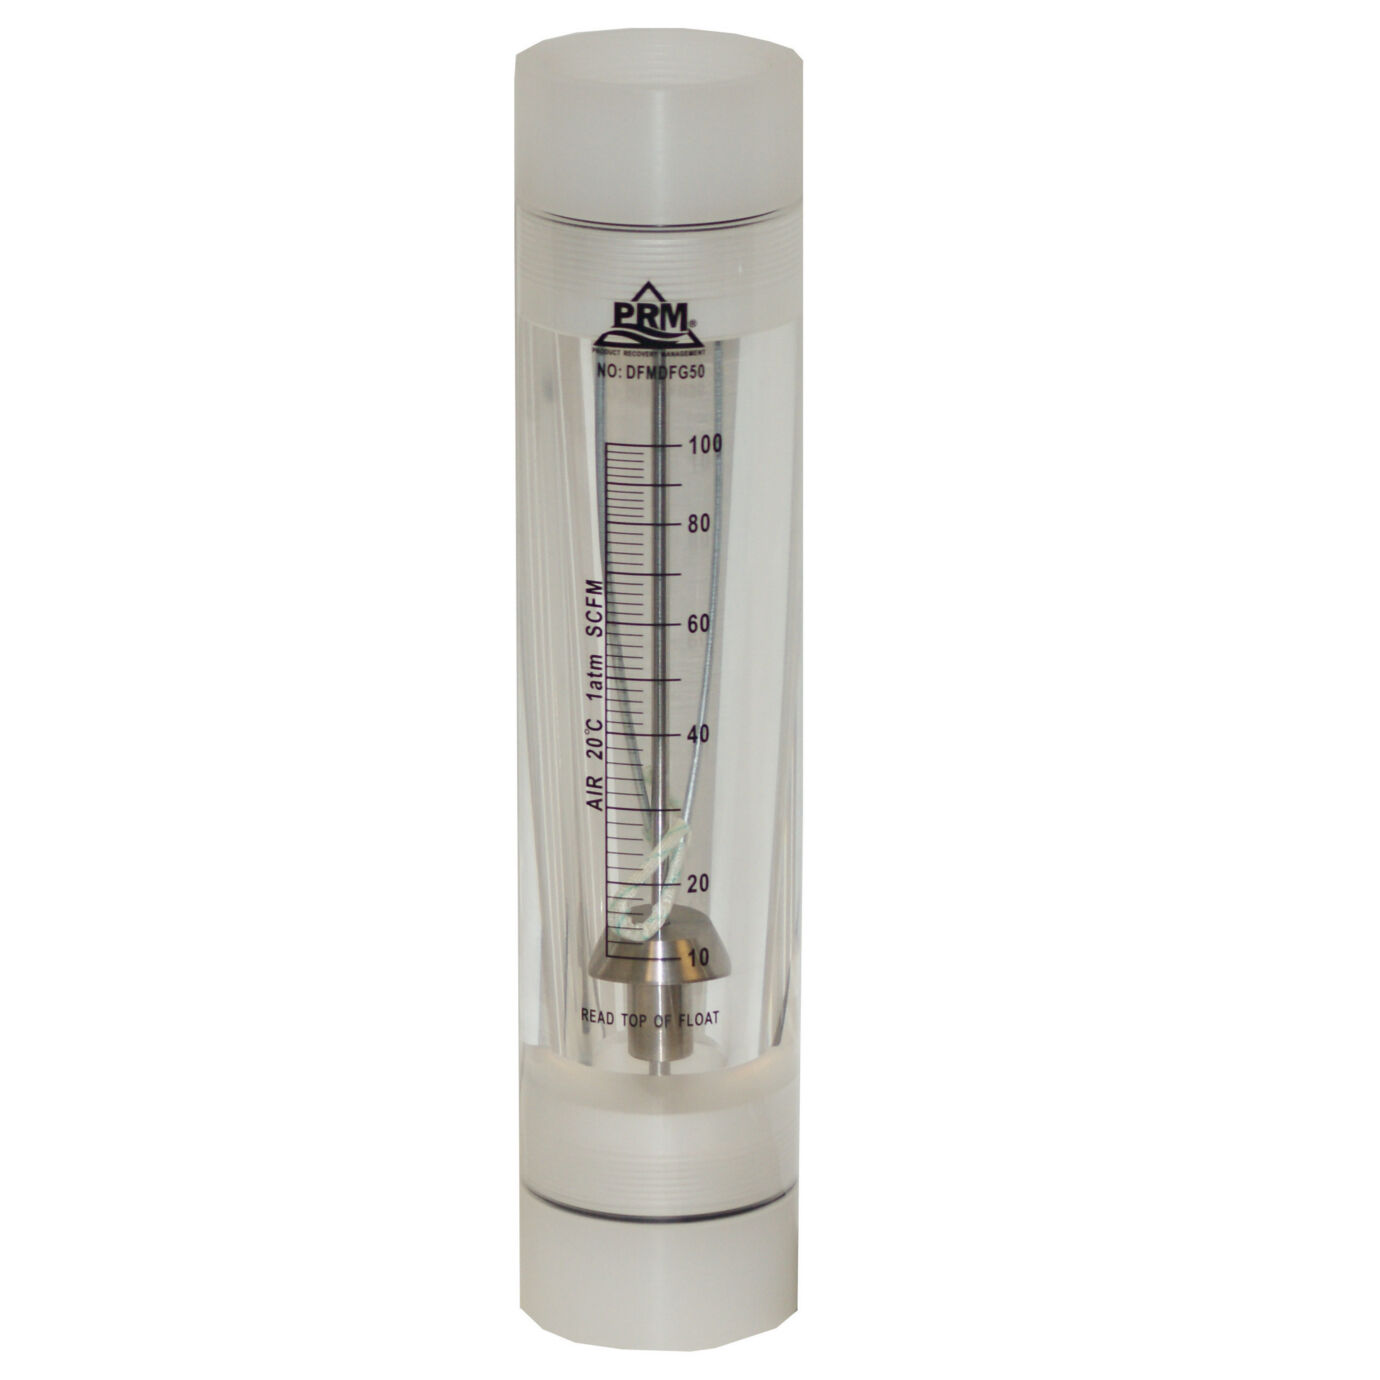 PRM 10-100 SCFM Rotameter Viton Seals 2” FNPT Connect Air/Gas Flow Meter